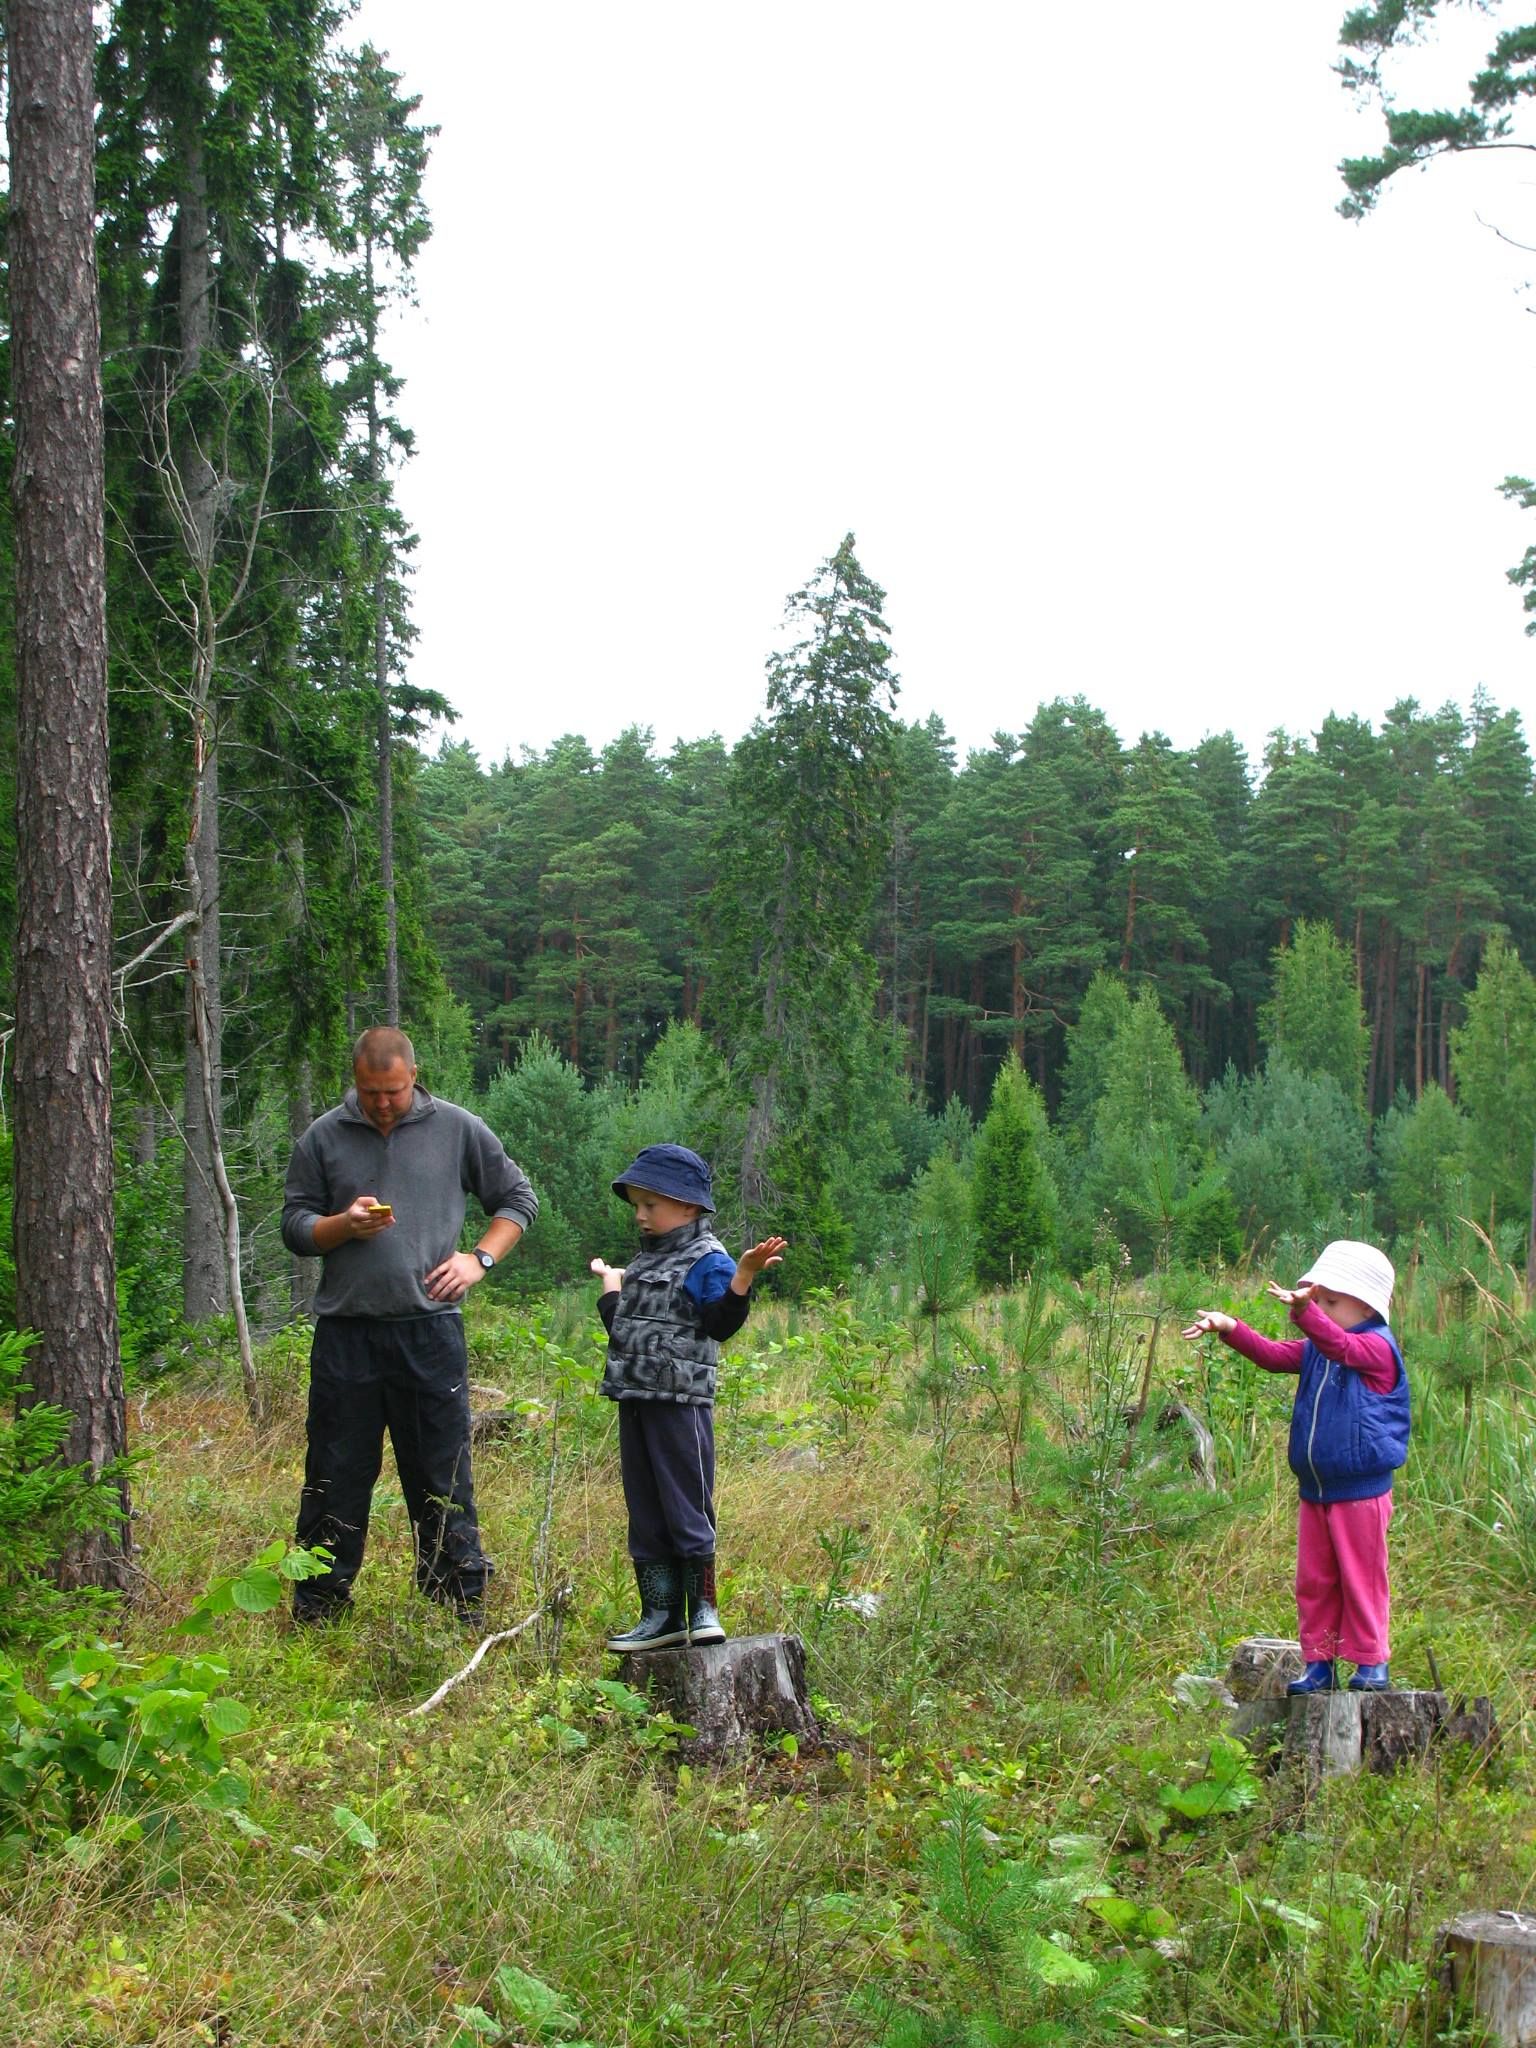 ASi Timber metsaspetsialist Kristo Kütt koos oma lastega metsas. Taamal näha pea kogu metsa eluring – lageraielank, noor kultuur, noorendik, keskealine ja küps mets.